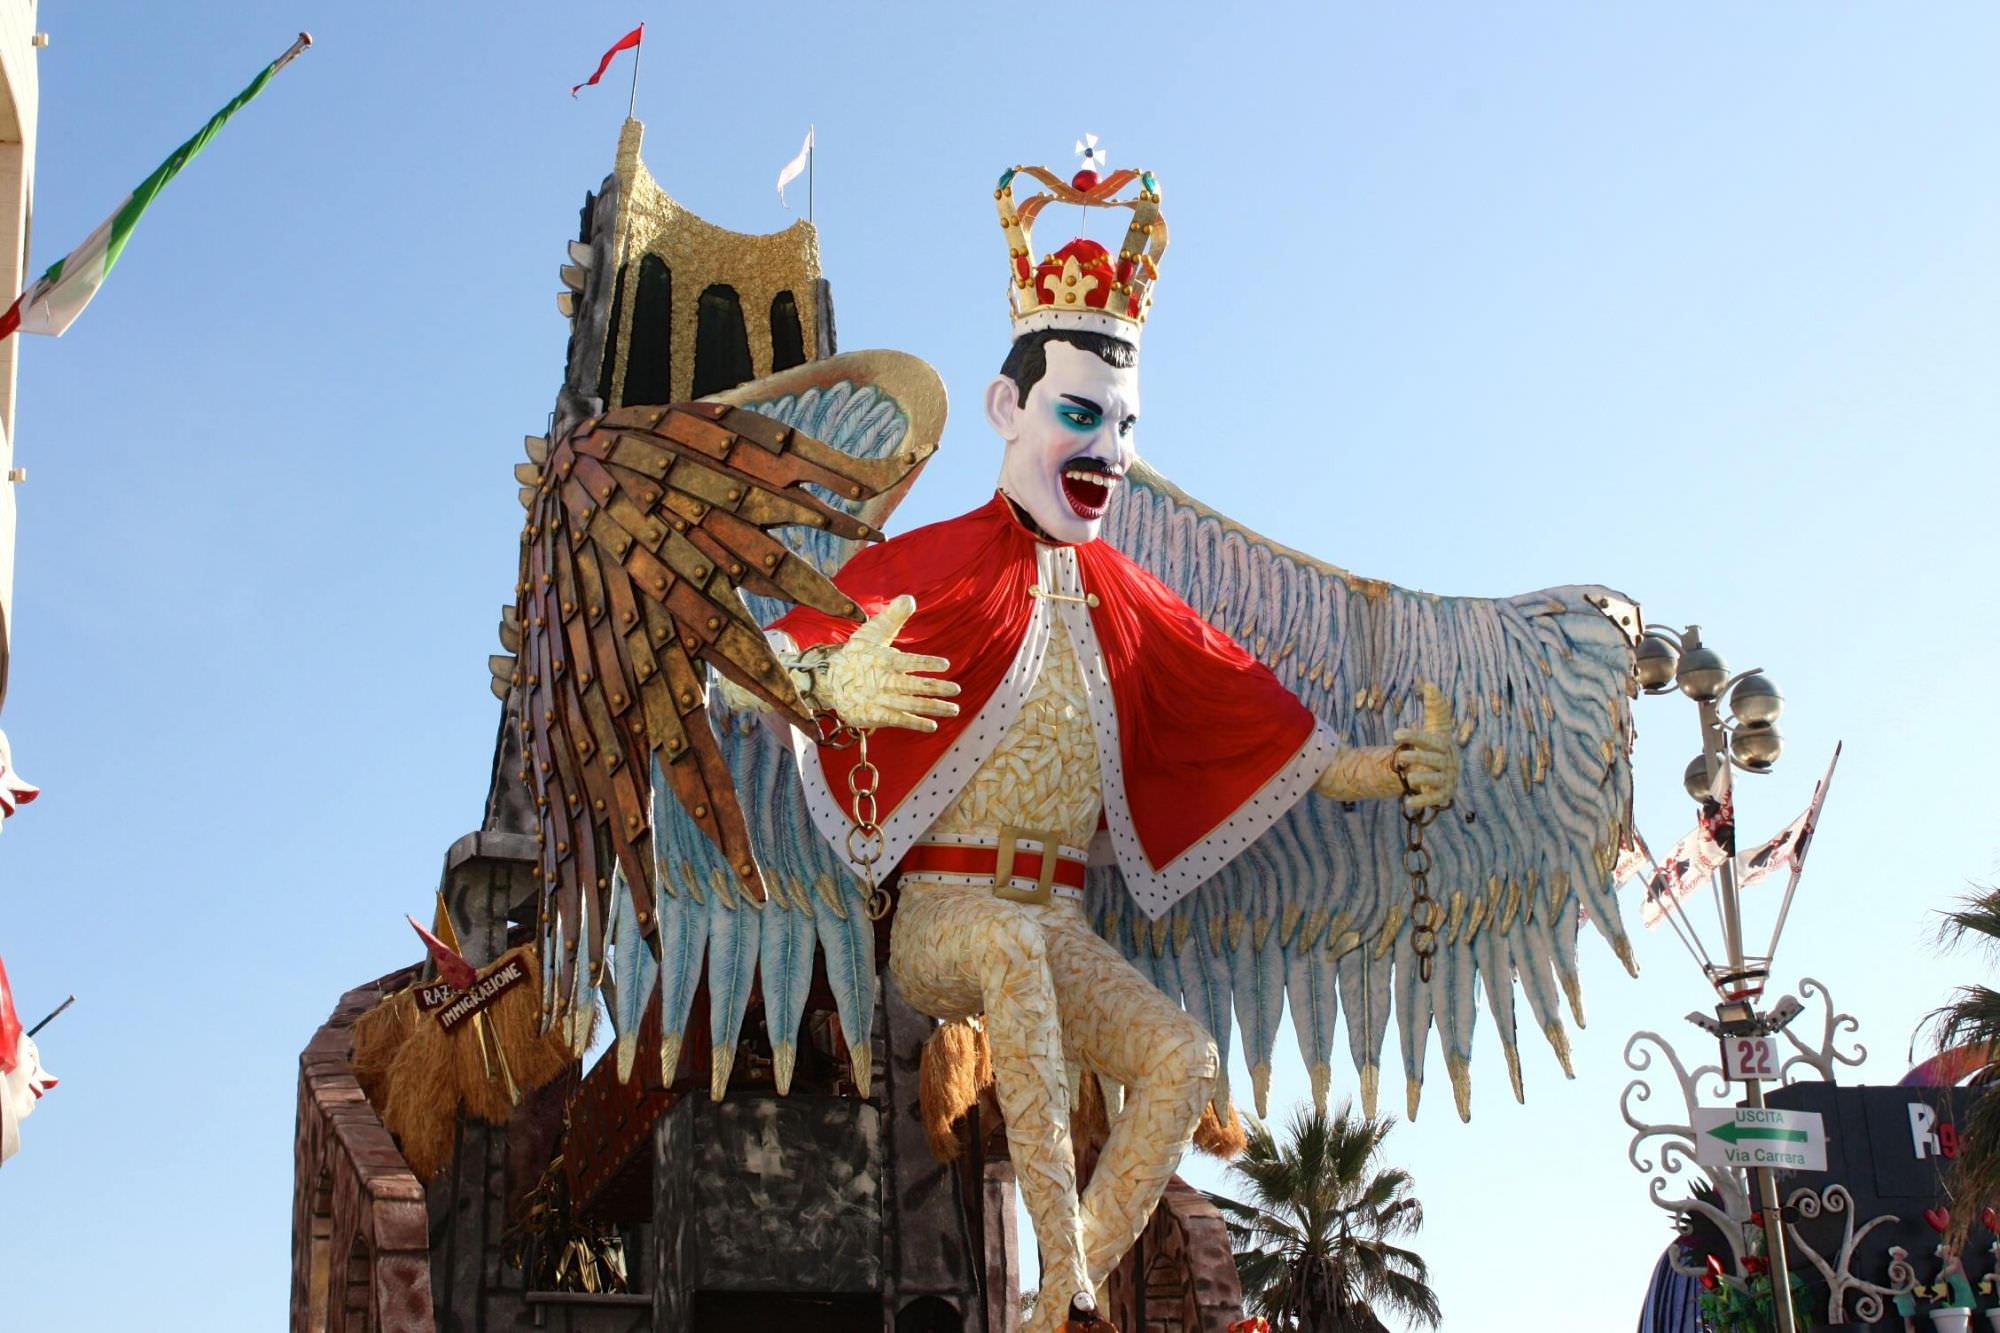 “Basta paragonare Carnevale e sociale, Viareggio non può rinunciare a un evento così”